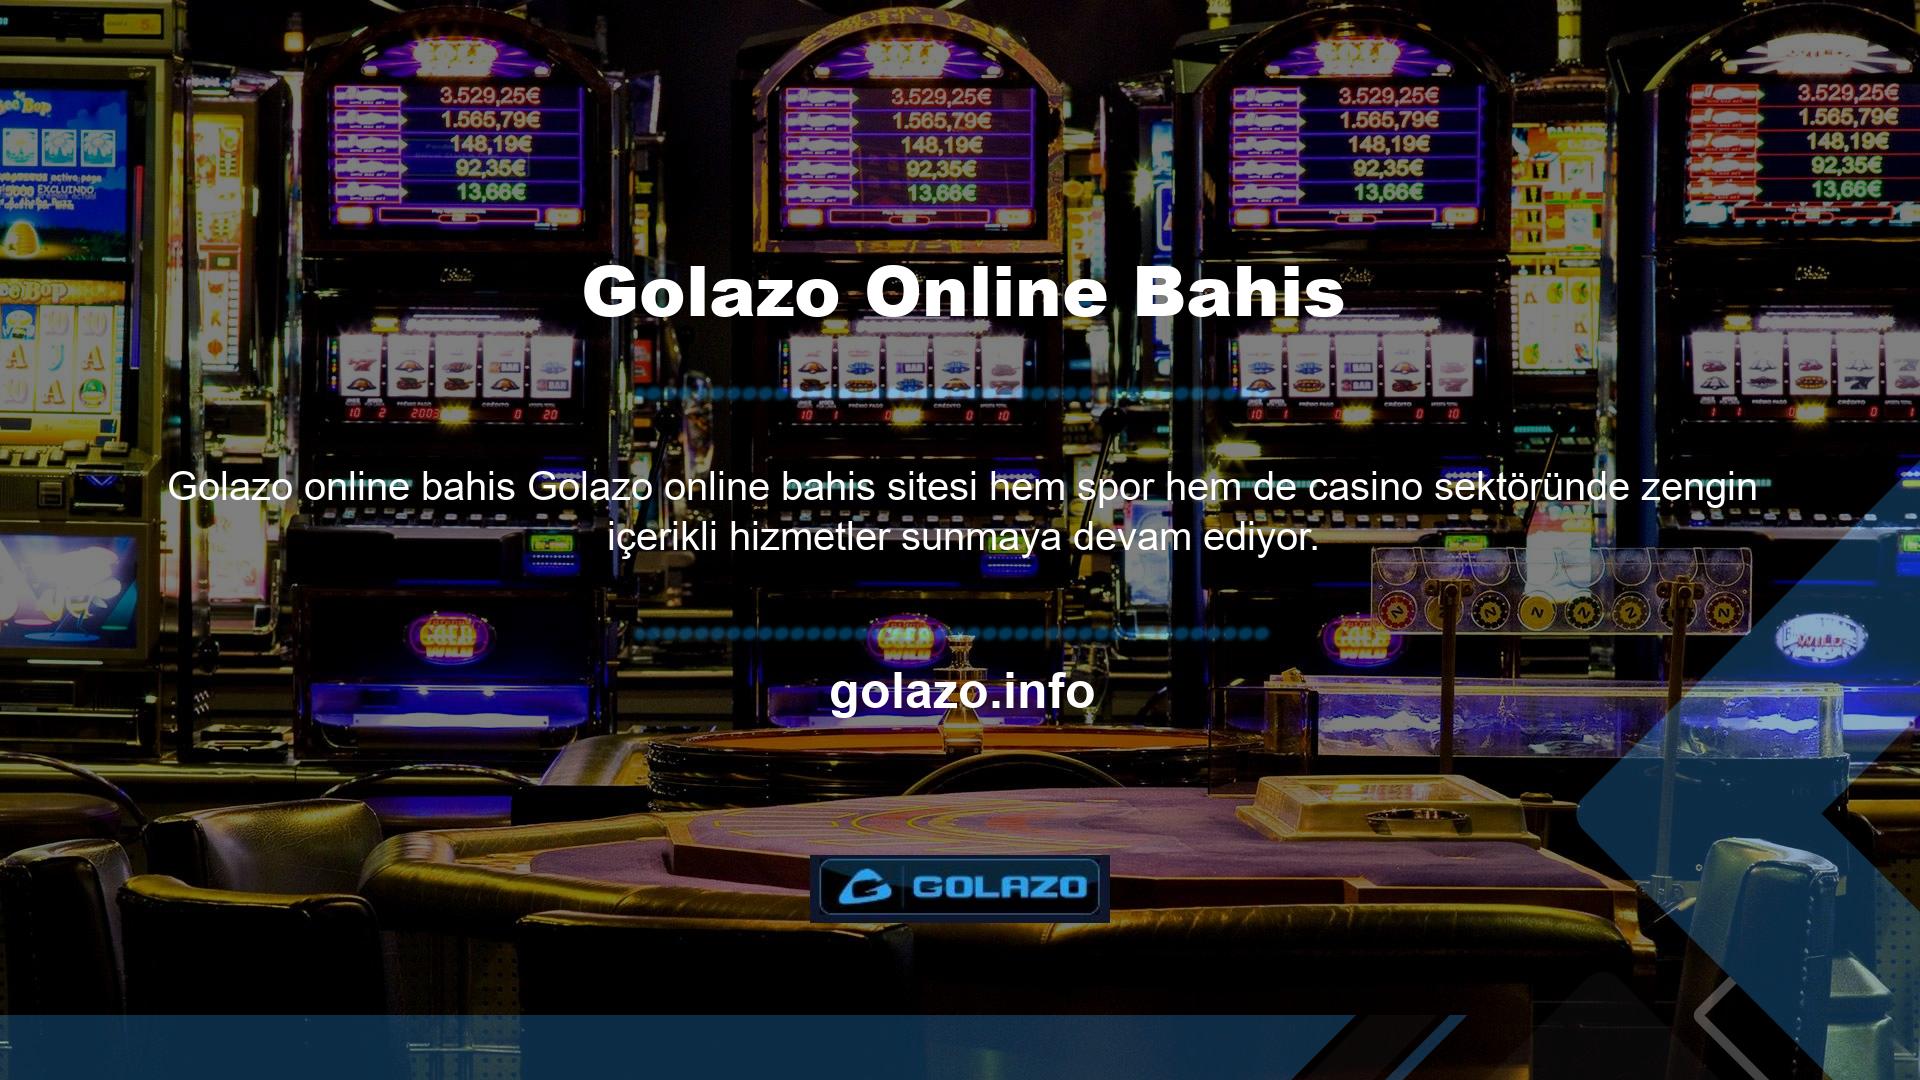 Tüm oyunlarını lisanslı ve hilesiz olarak oynayan site, Golazo casino bölümündeki canlı odasında poker, rulet, blackjack, bakara ve daha fazlasını içeren kaliteli içeriği 7/24 sunmaktadır